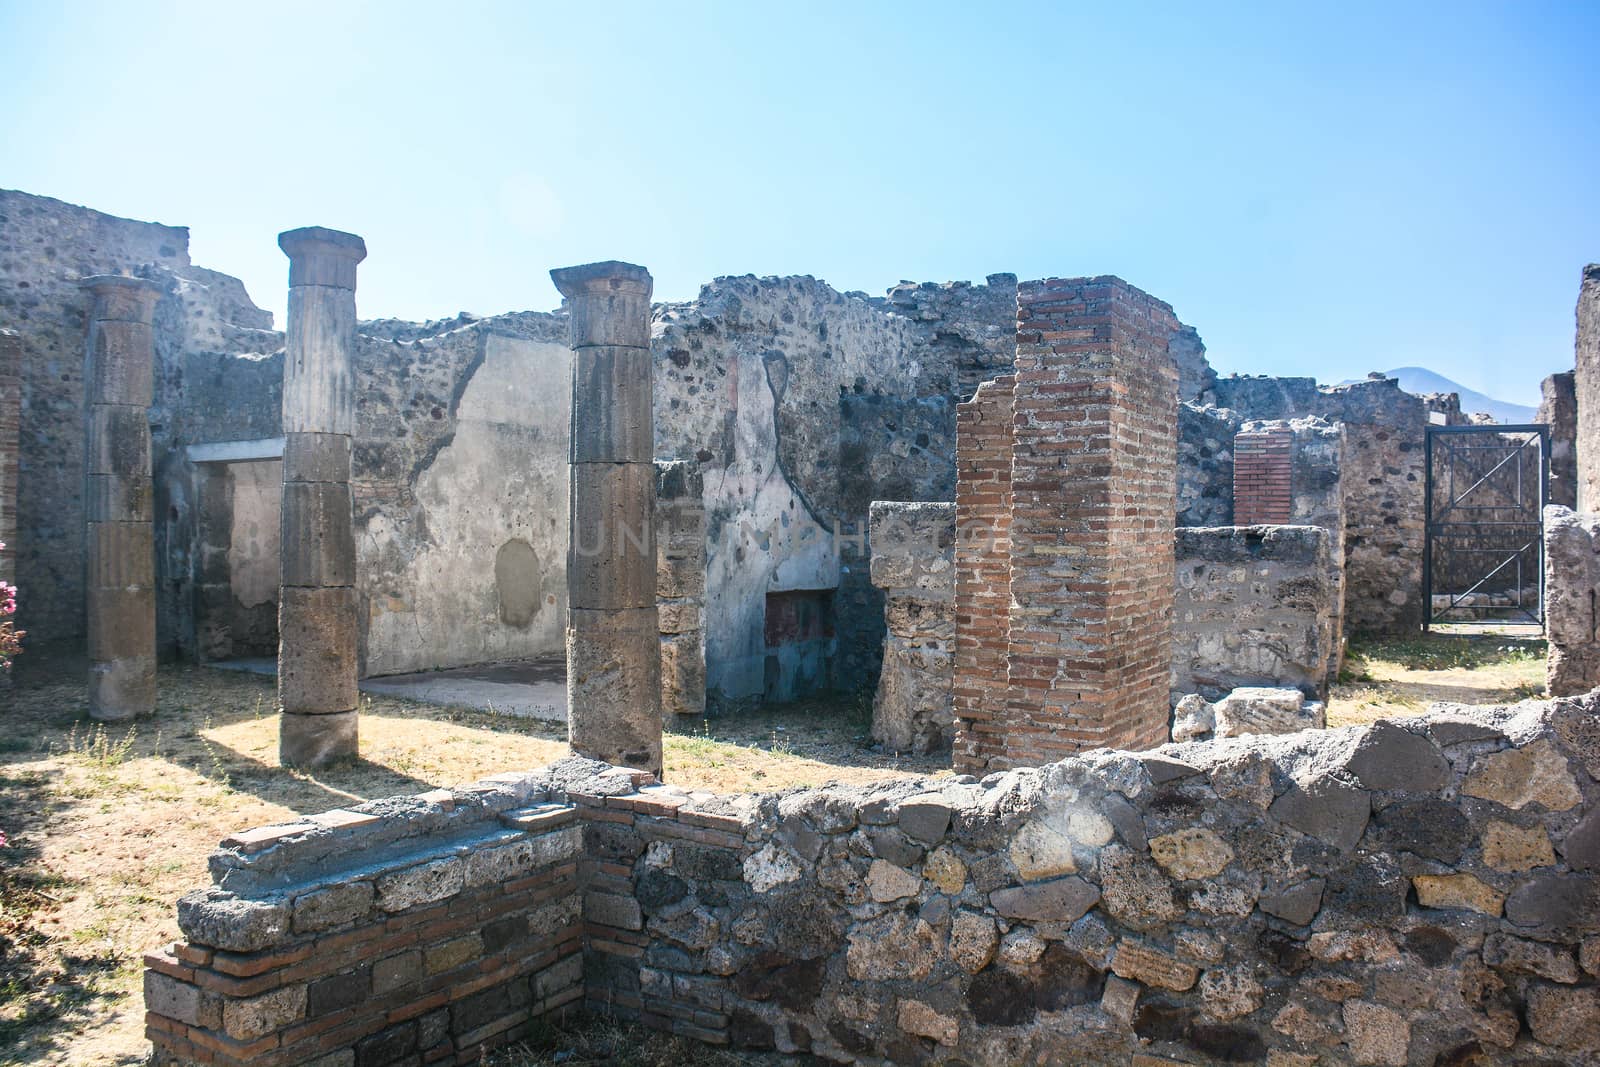 internal garden of a house in Pompeii